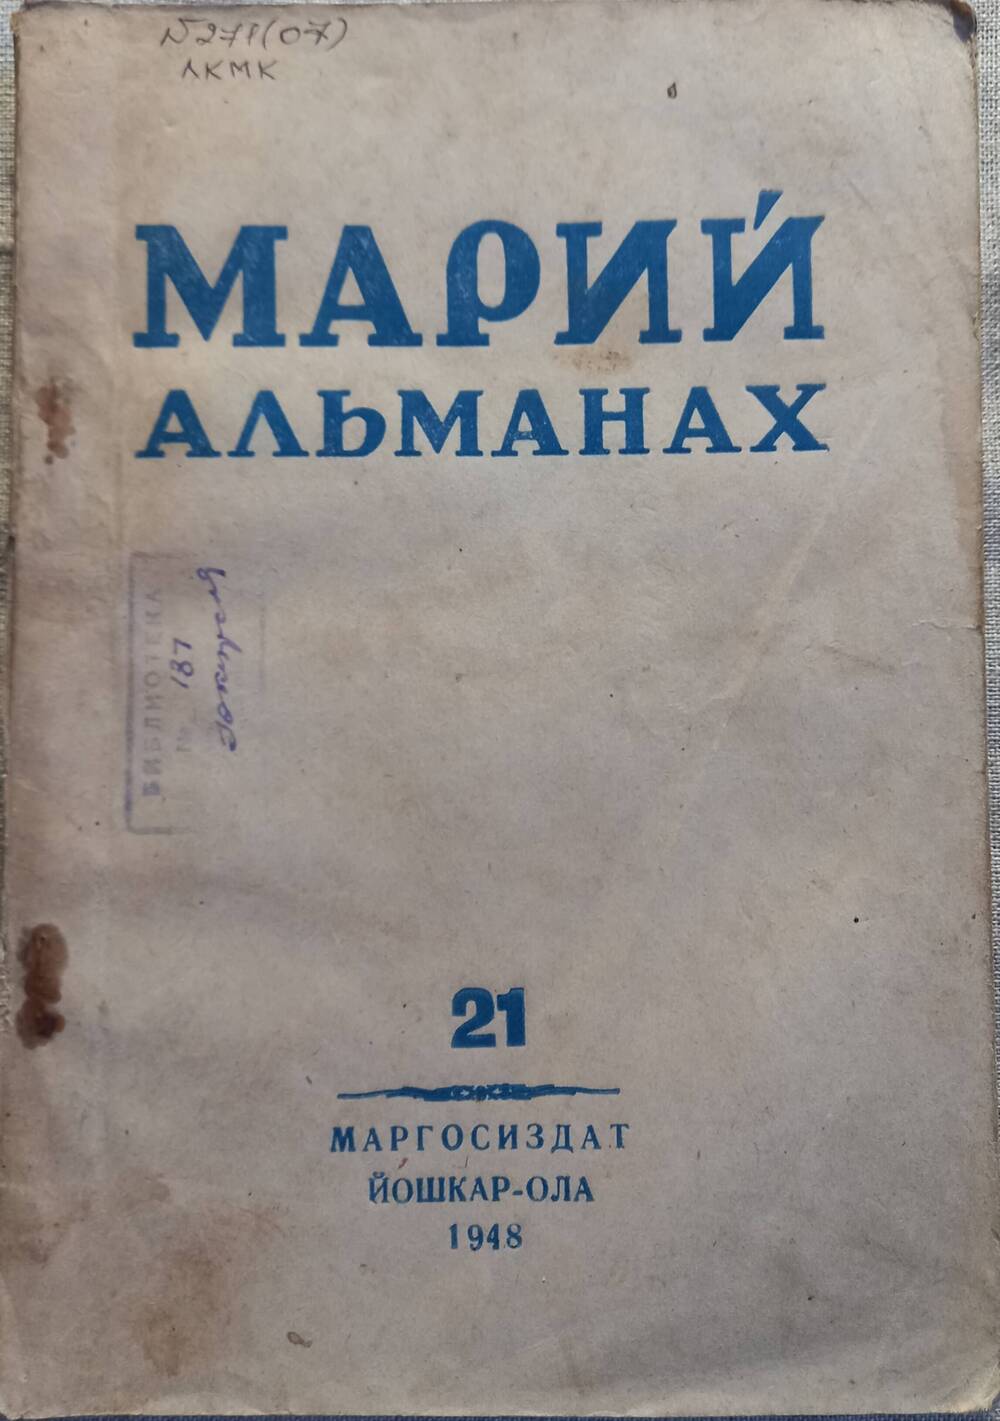 Марий альманах (Марийский альманах) №21